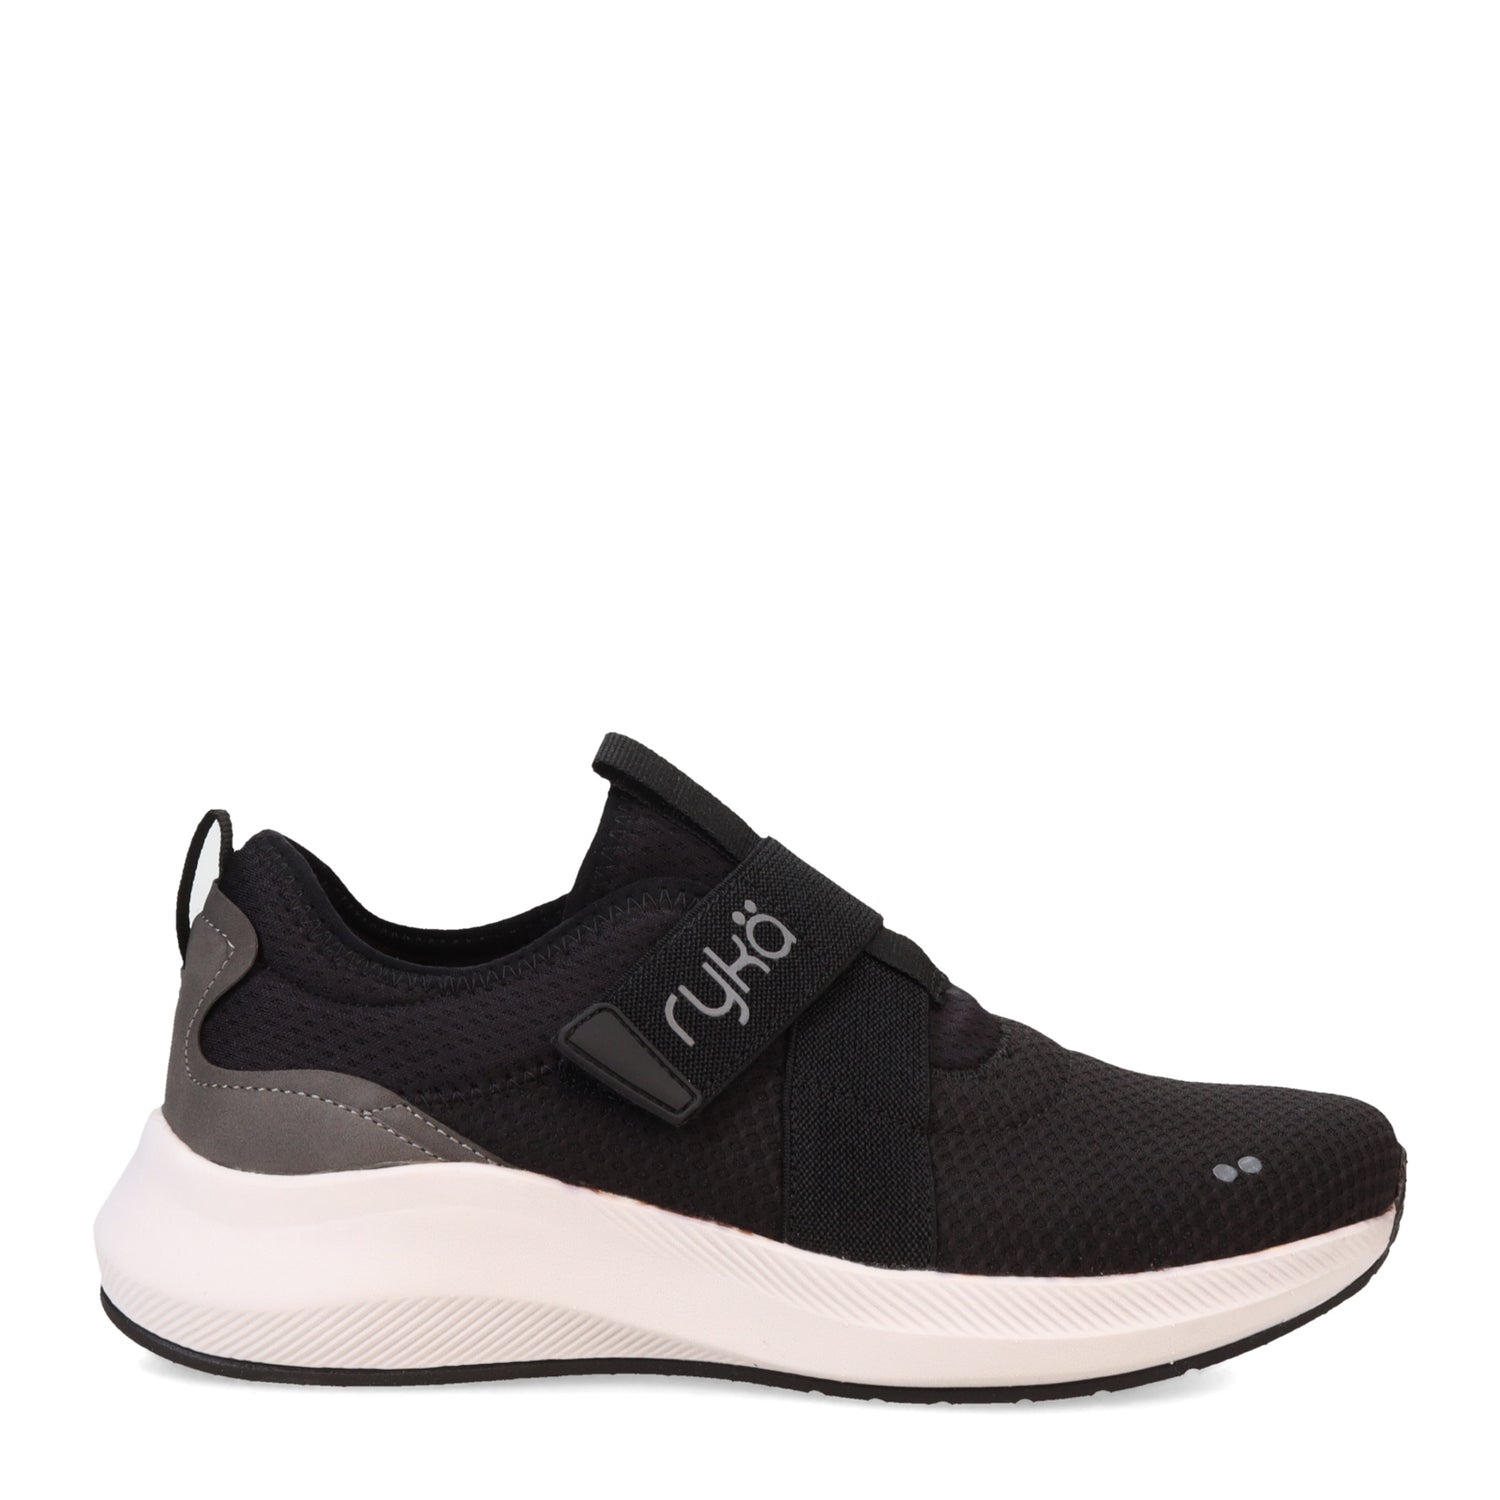 Peltz Shoes  Women's Ryka Fame Slip-On Sneaker BLACK I3934M1001